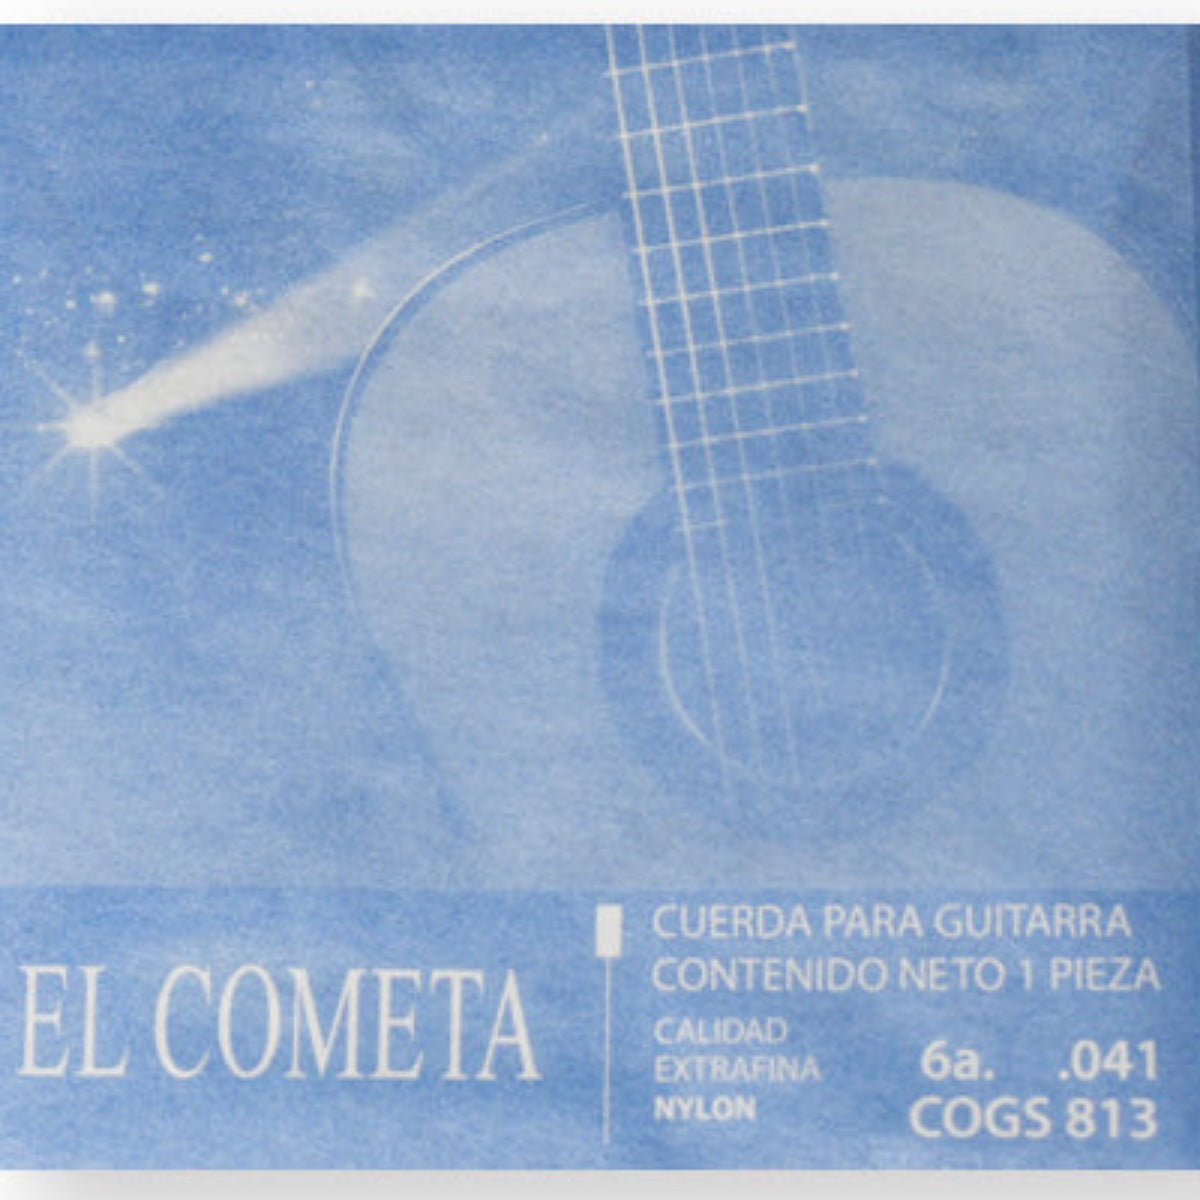 CUERDA P/GUITARRA EL COMETA 6A NYLON C/BORLA 041